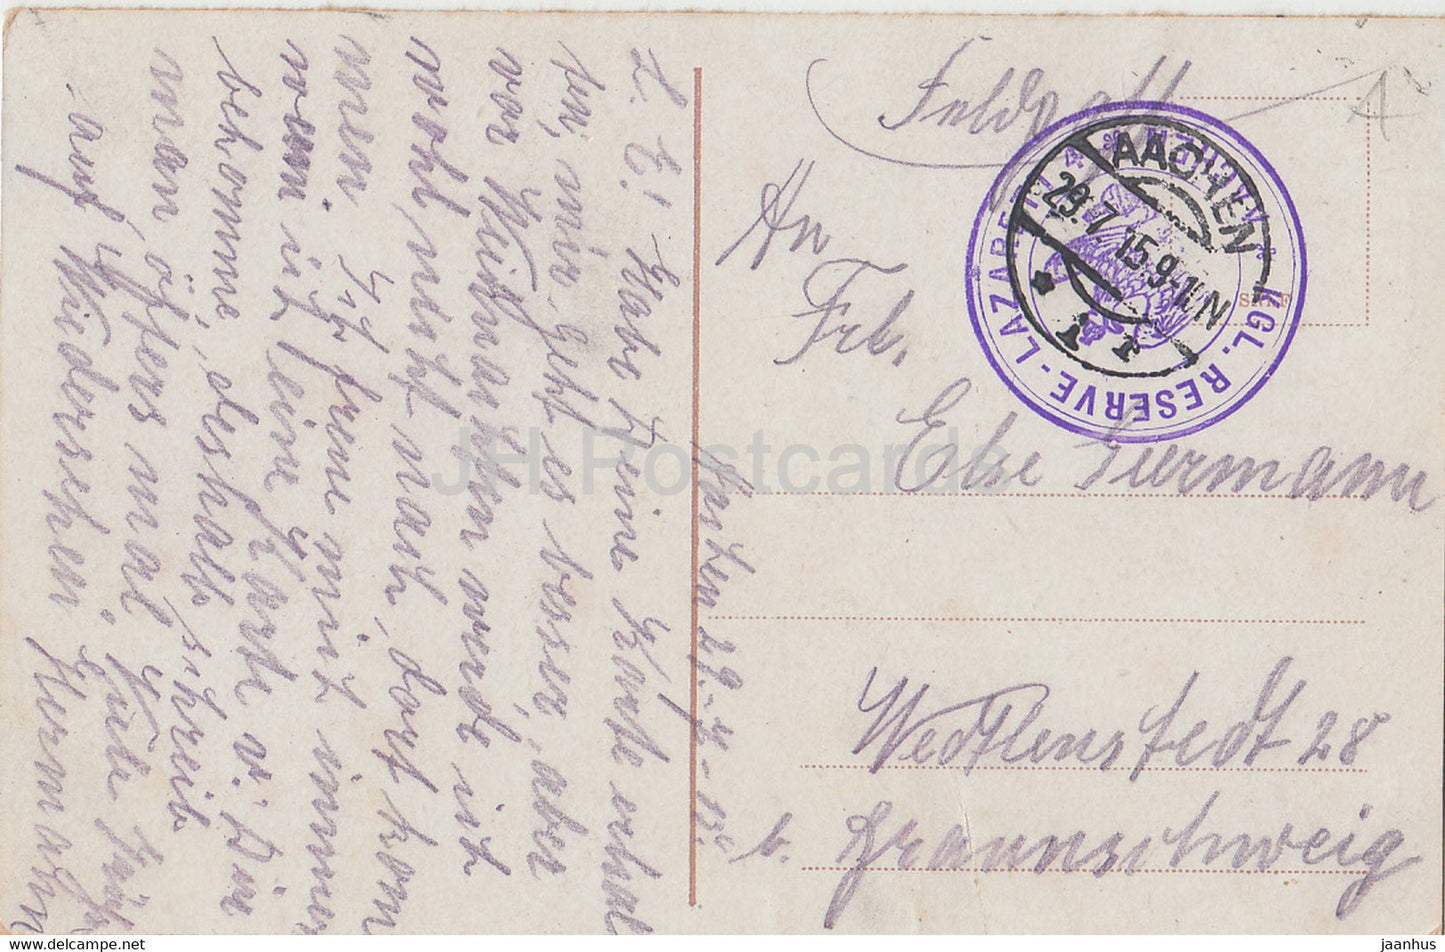 Aix-la-Chapelle - Ponttor - Feldpost - carte postale ancienne - 1915 - Allemagne - utilisé